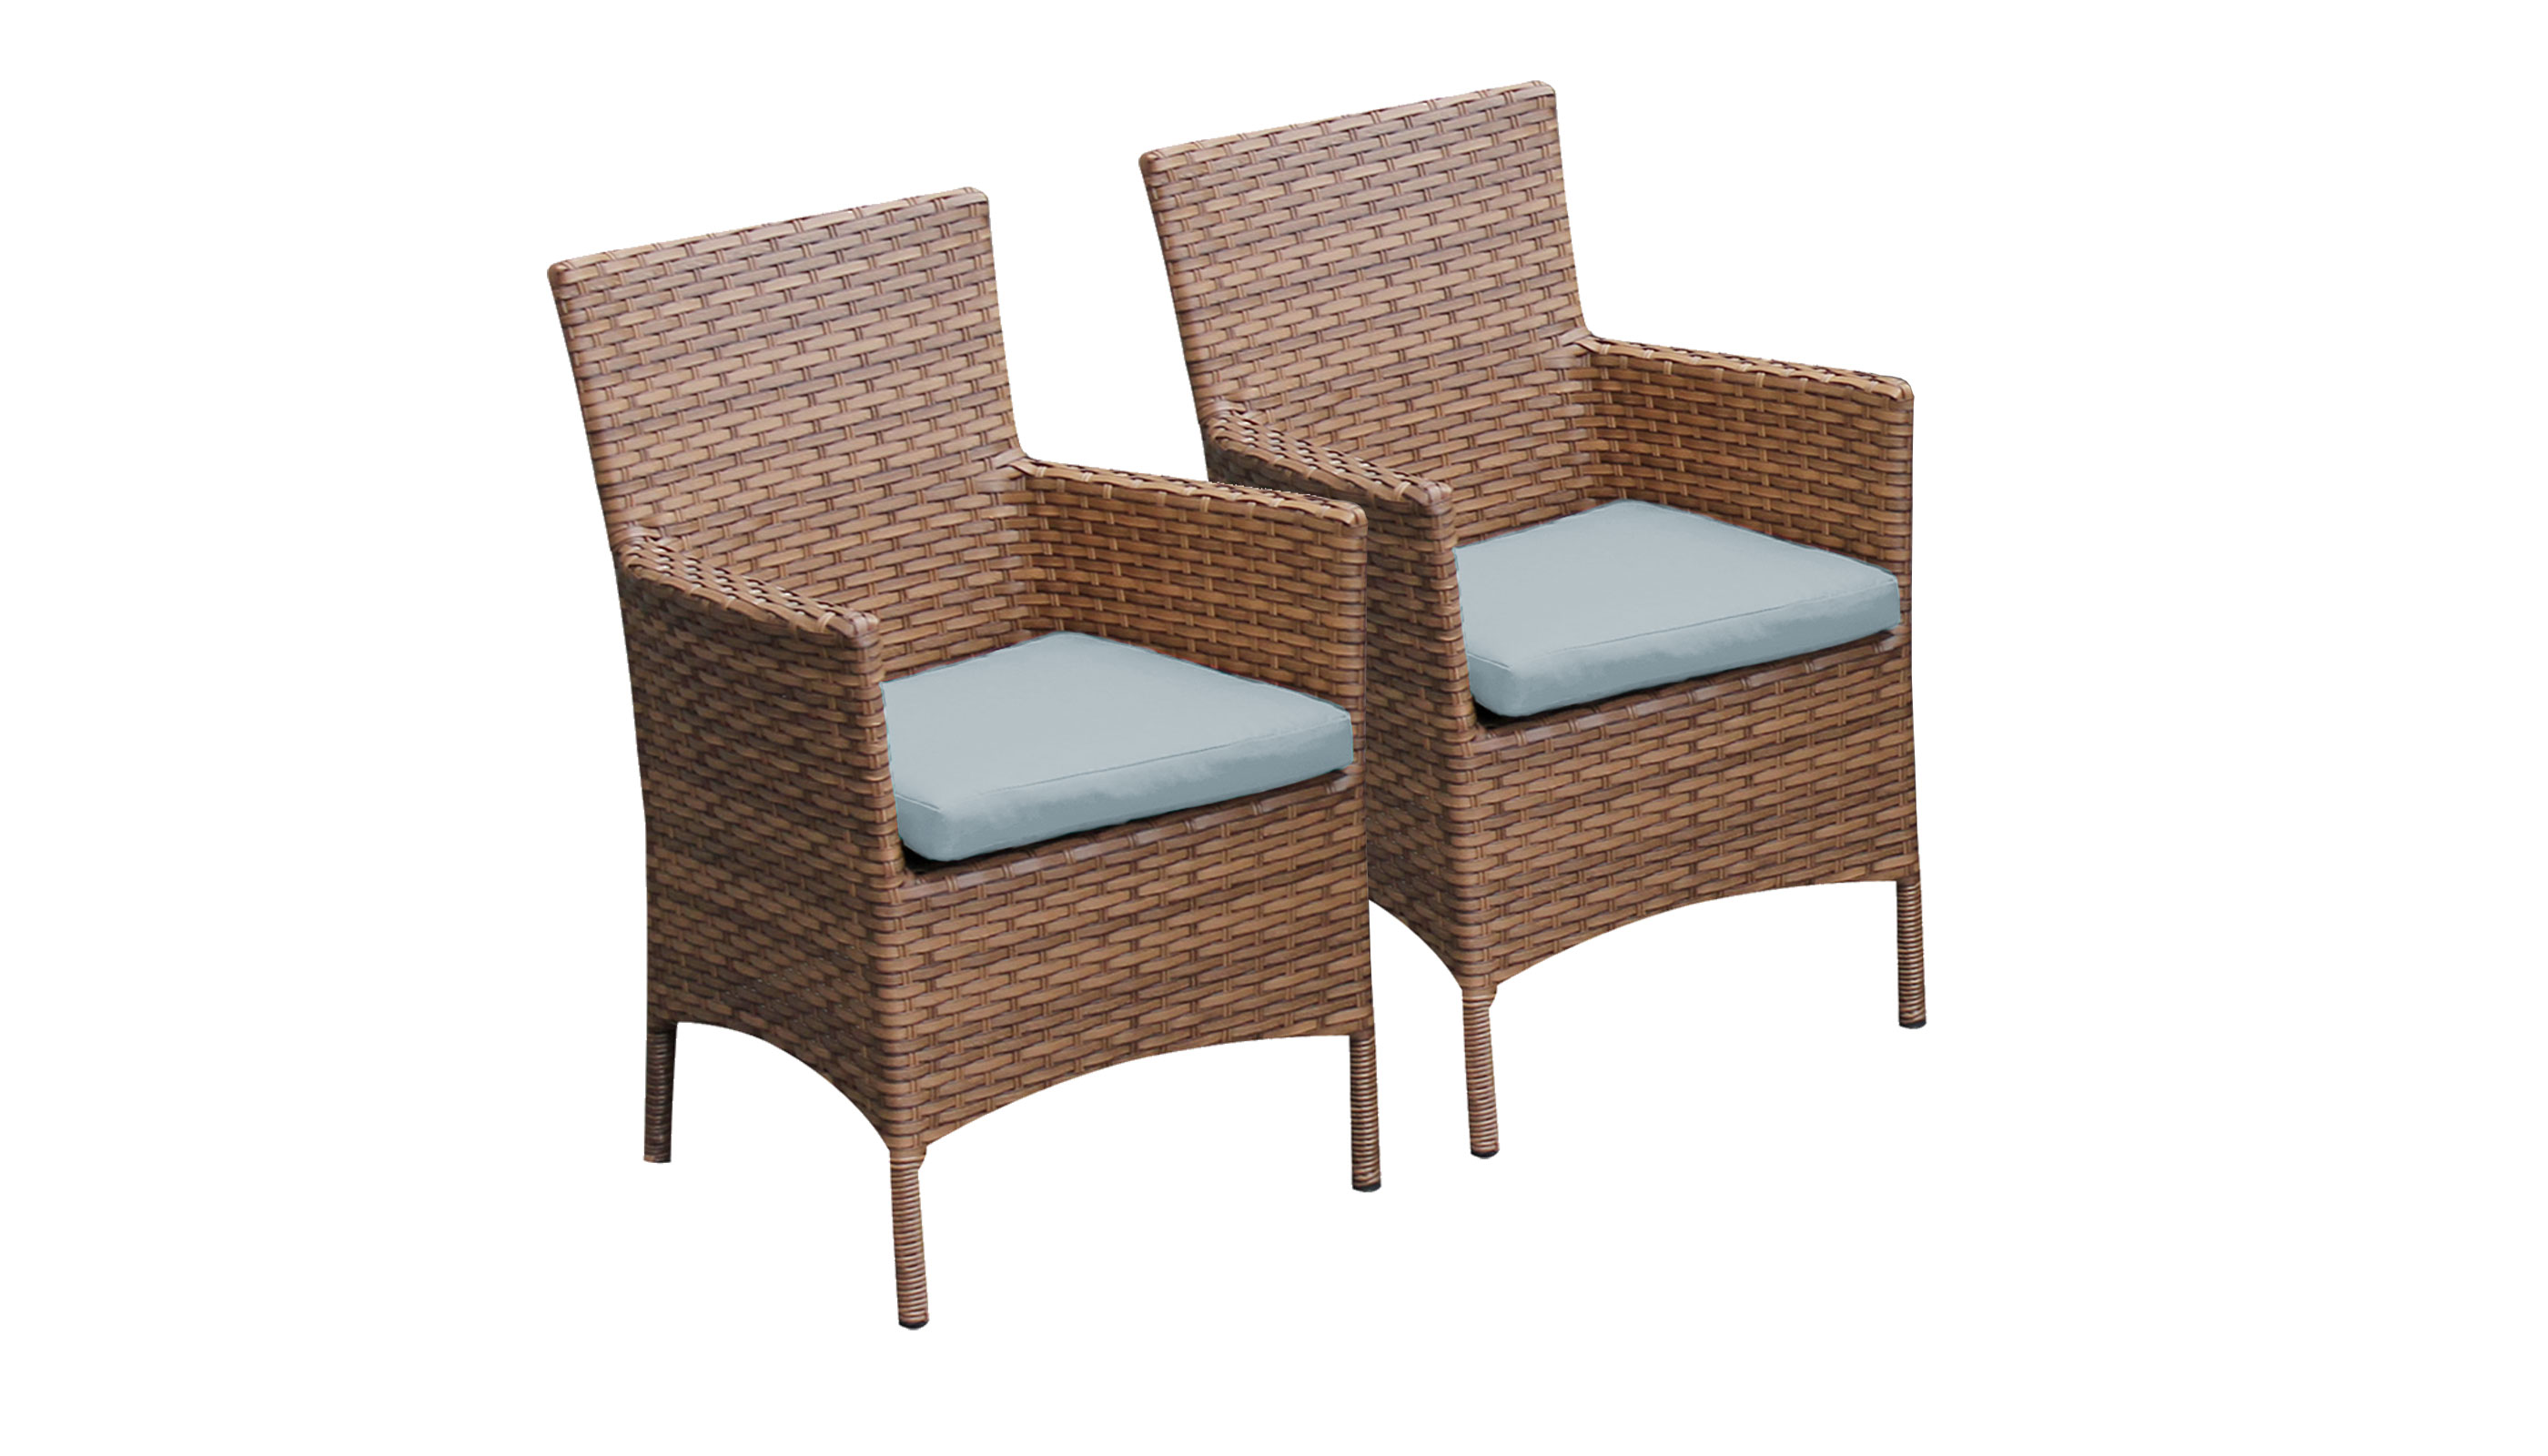 2 Laguna Dining Chairs w/ Arms in Spa - TK Classics Tkc093B-Dc-Spa